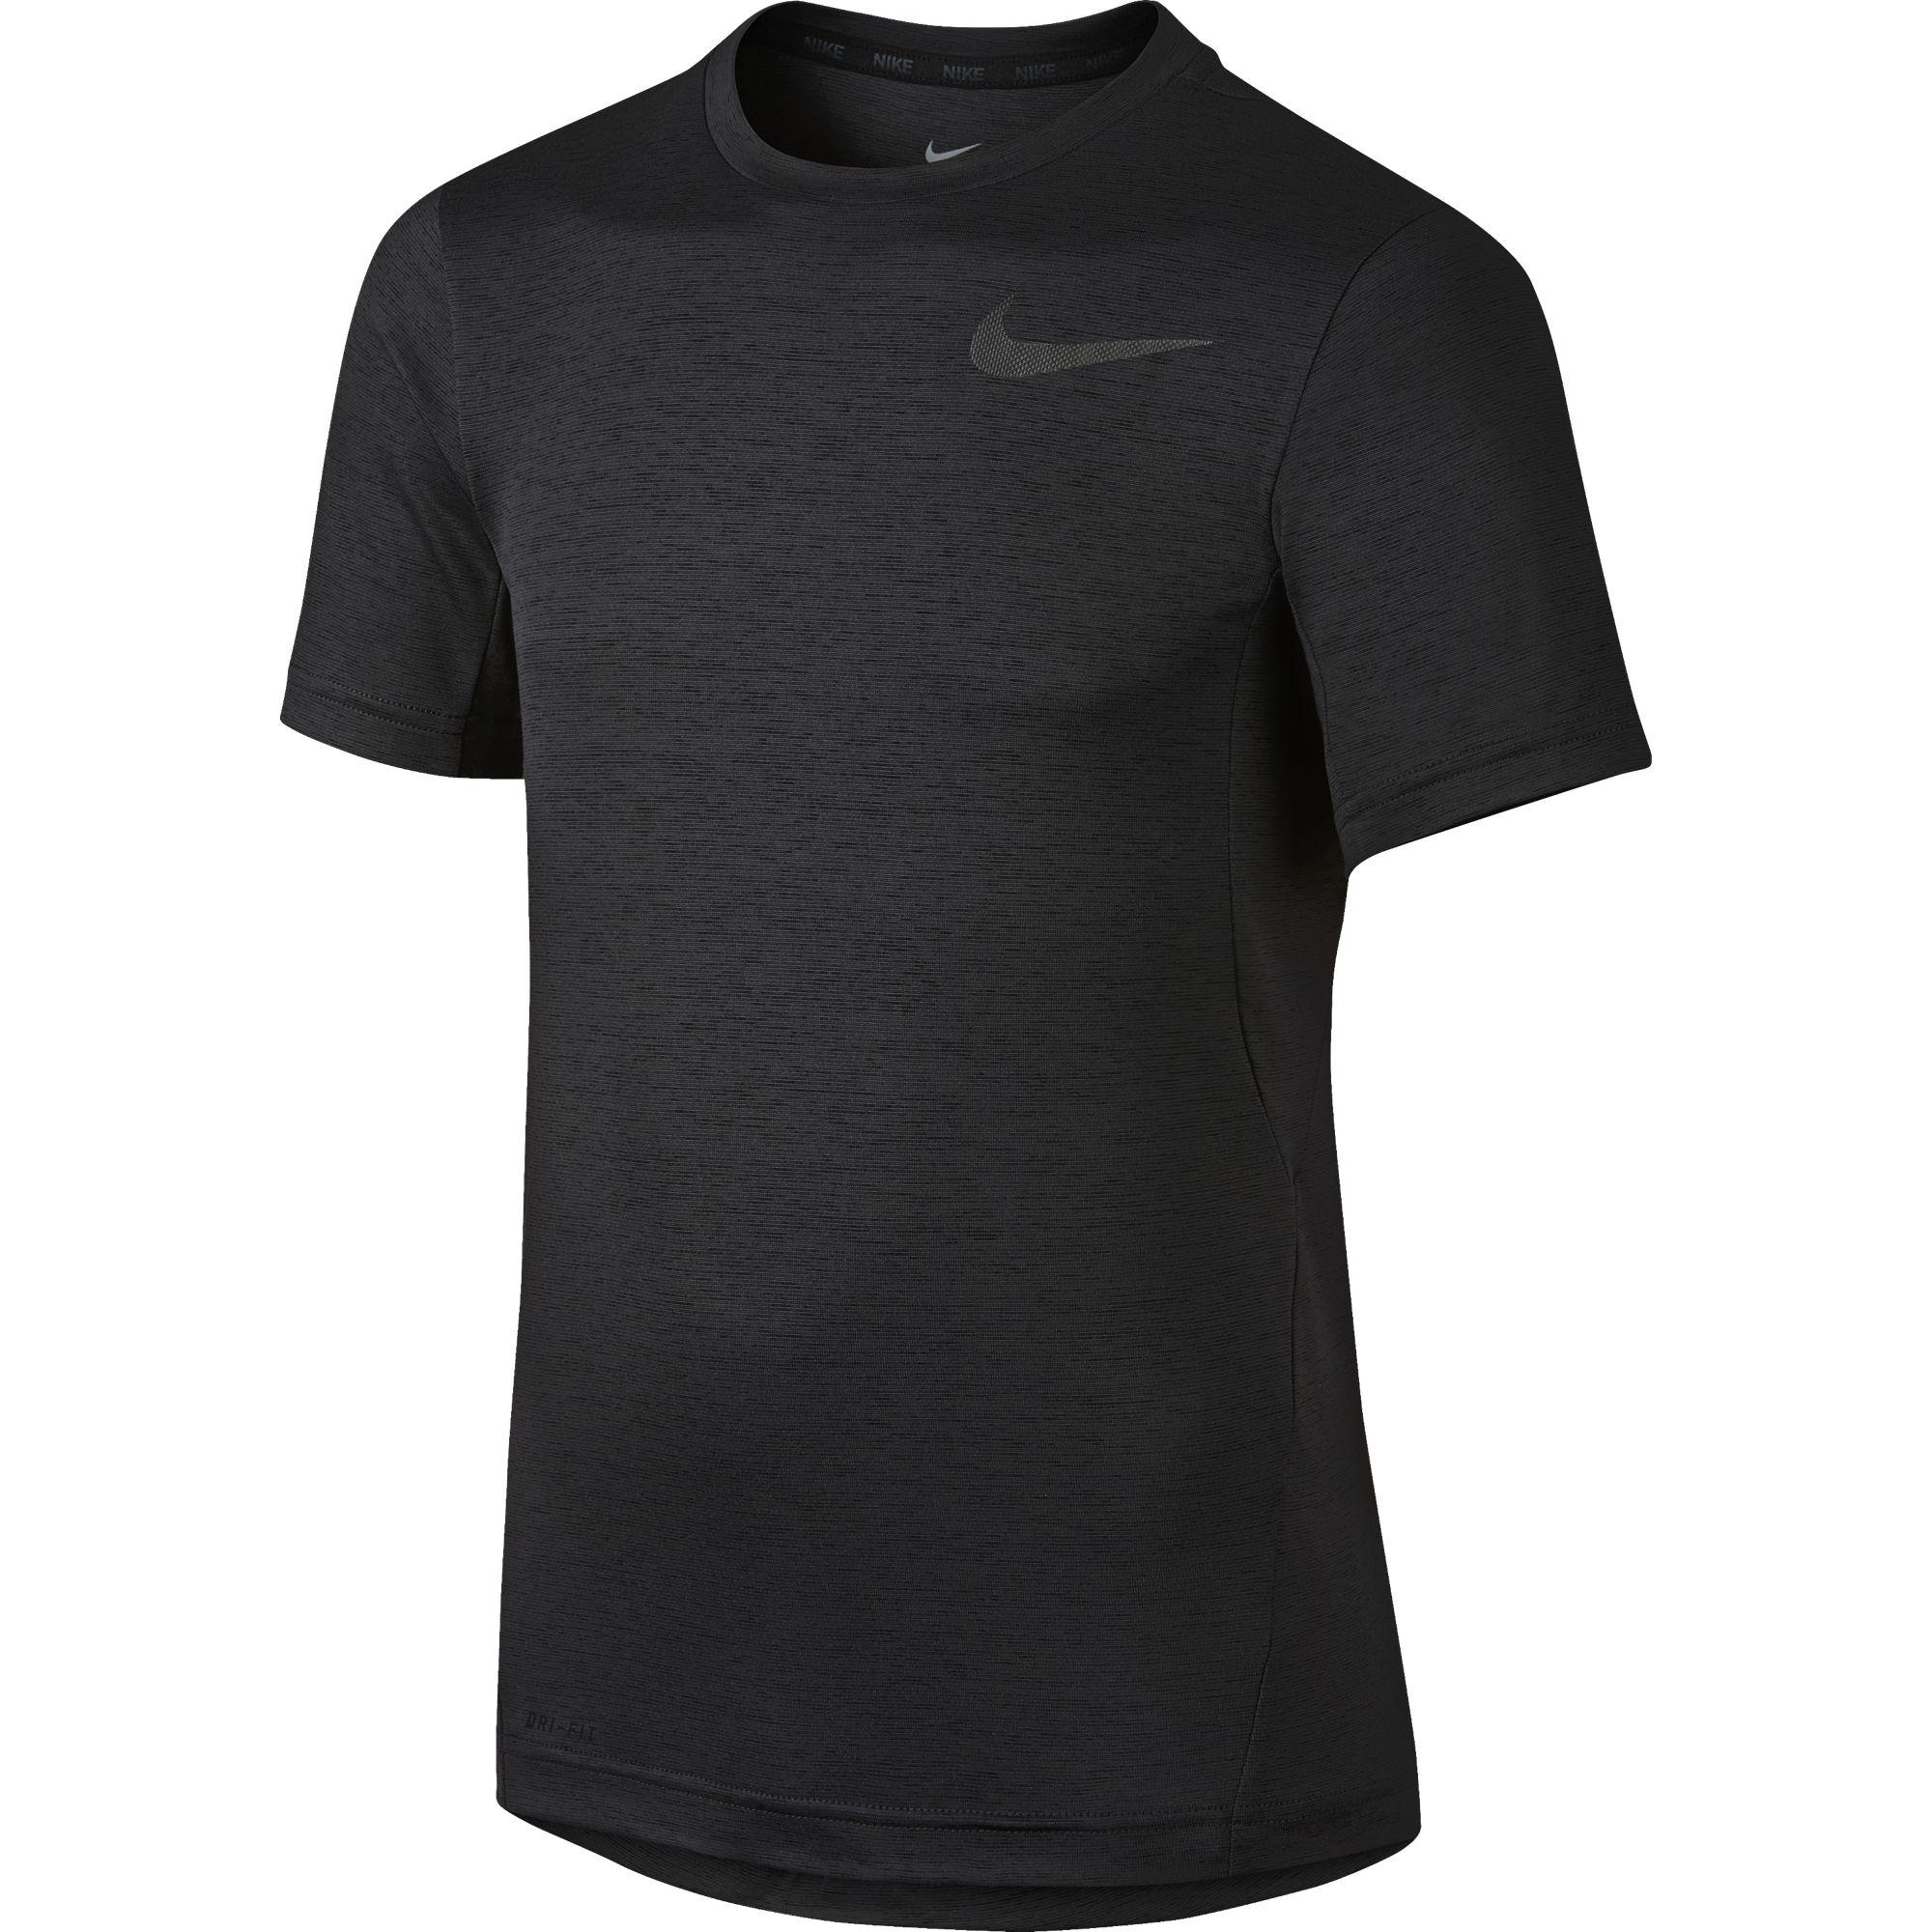 Nike Boys Dri-FIT Training Jersey - Black - Tennisnuts.com